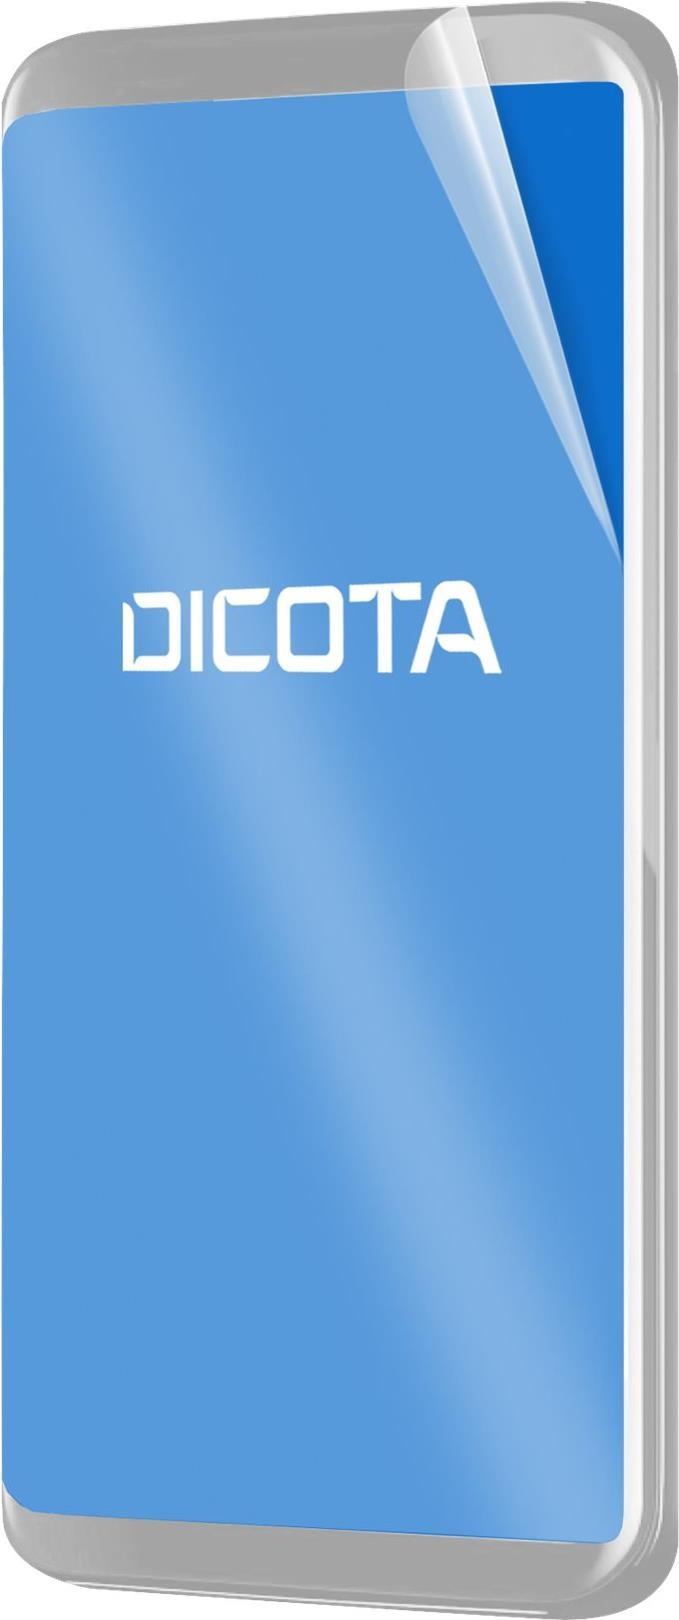 DICOTA Anti-Glare Filter 3H - Bildschirmschutz - durchsichtig - für Apple iPhone 11